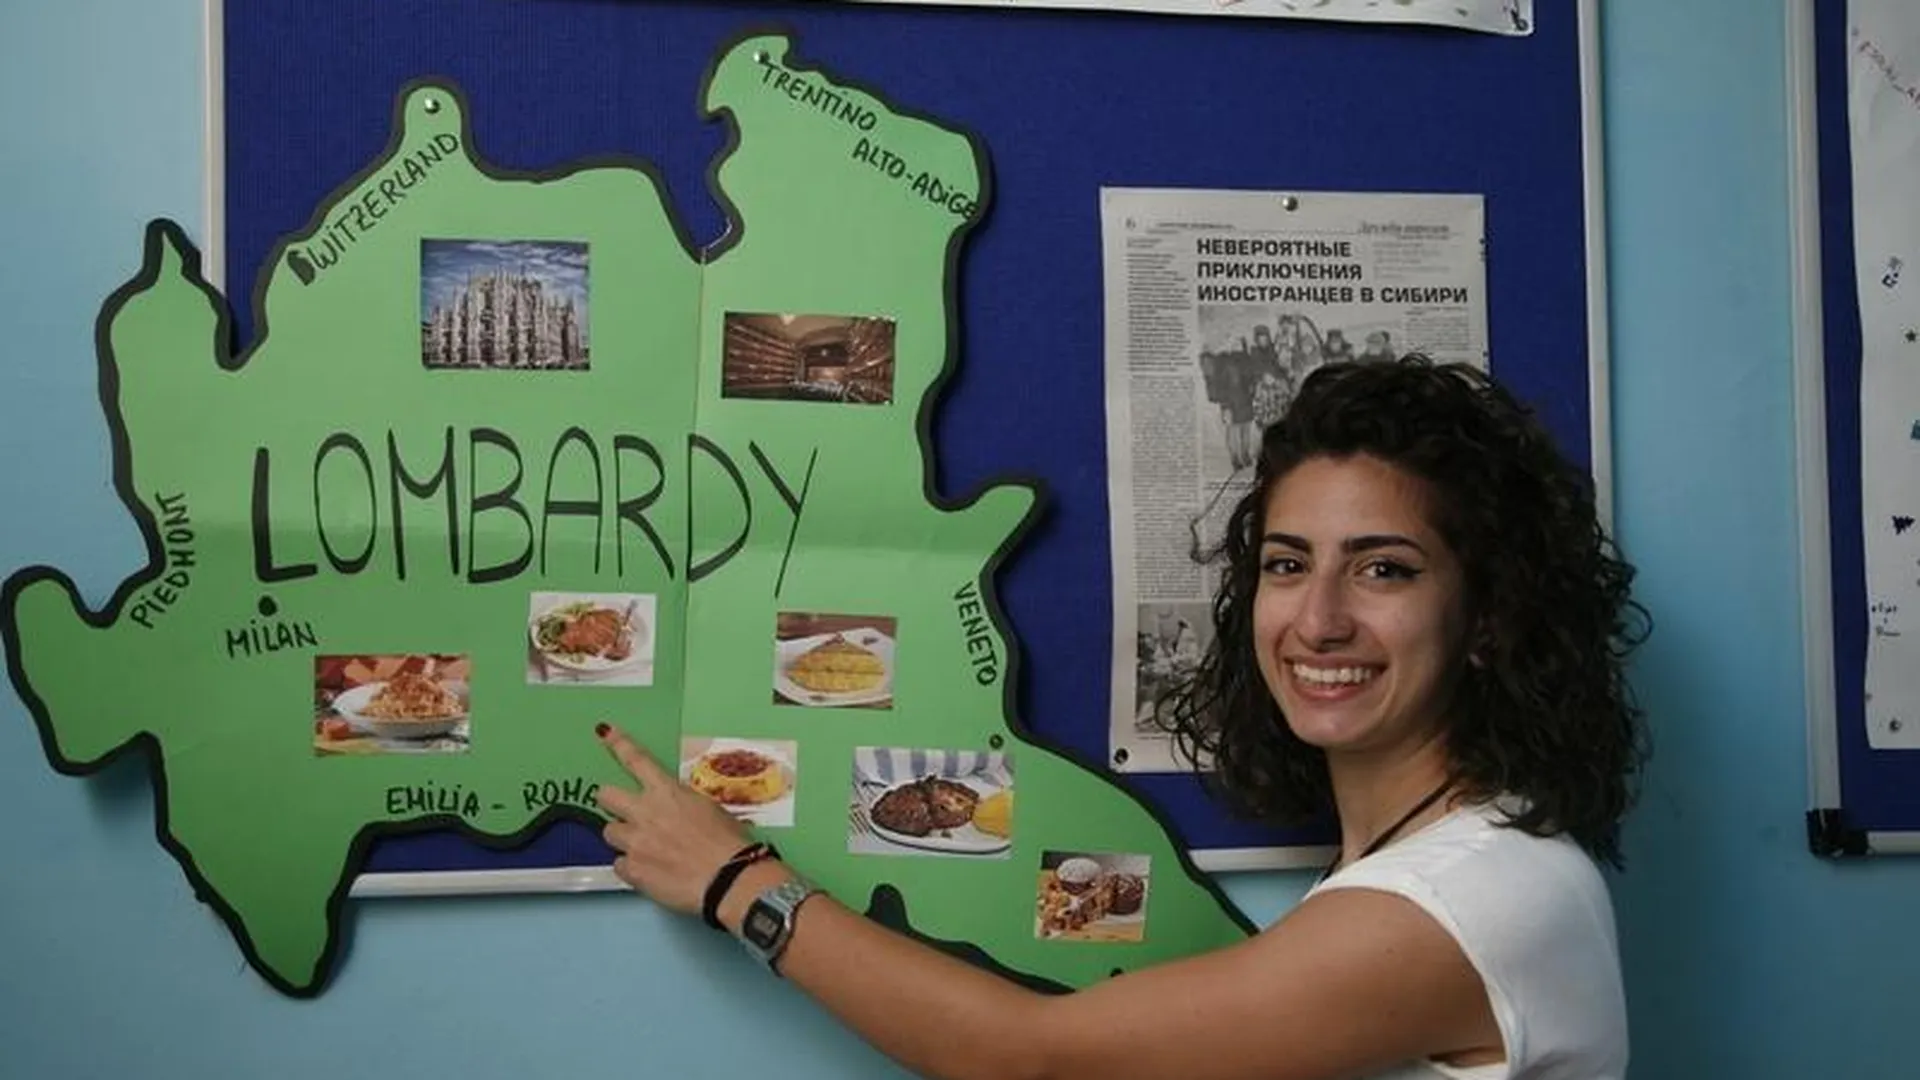 Мир, дружба, пельмени: итальянские школьники приехали в МО, чтобы изучать русский язык